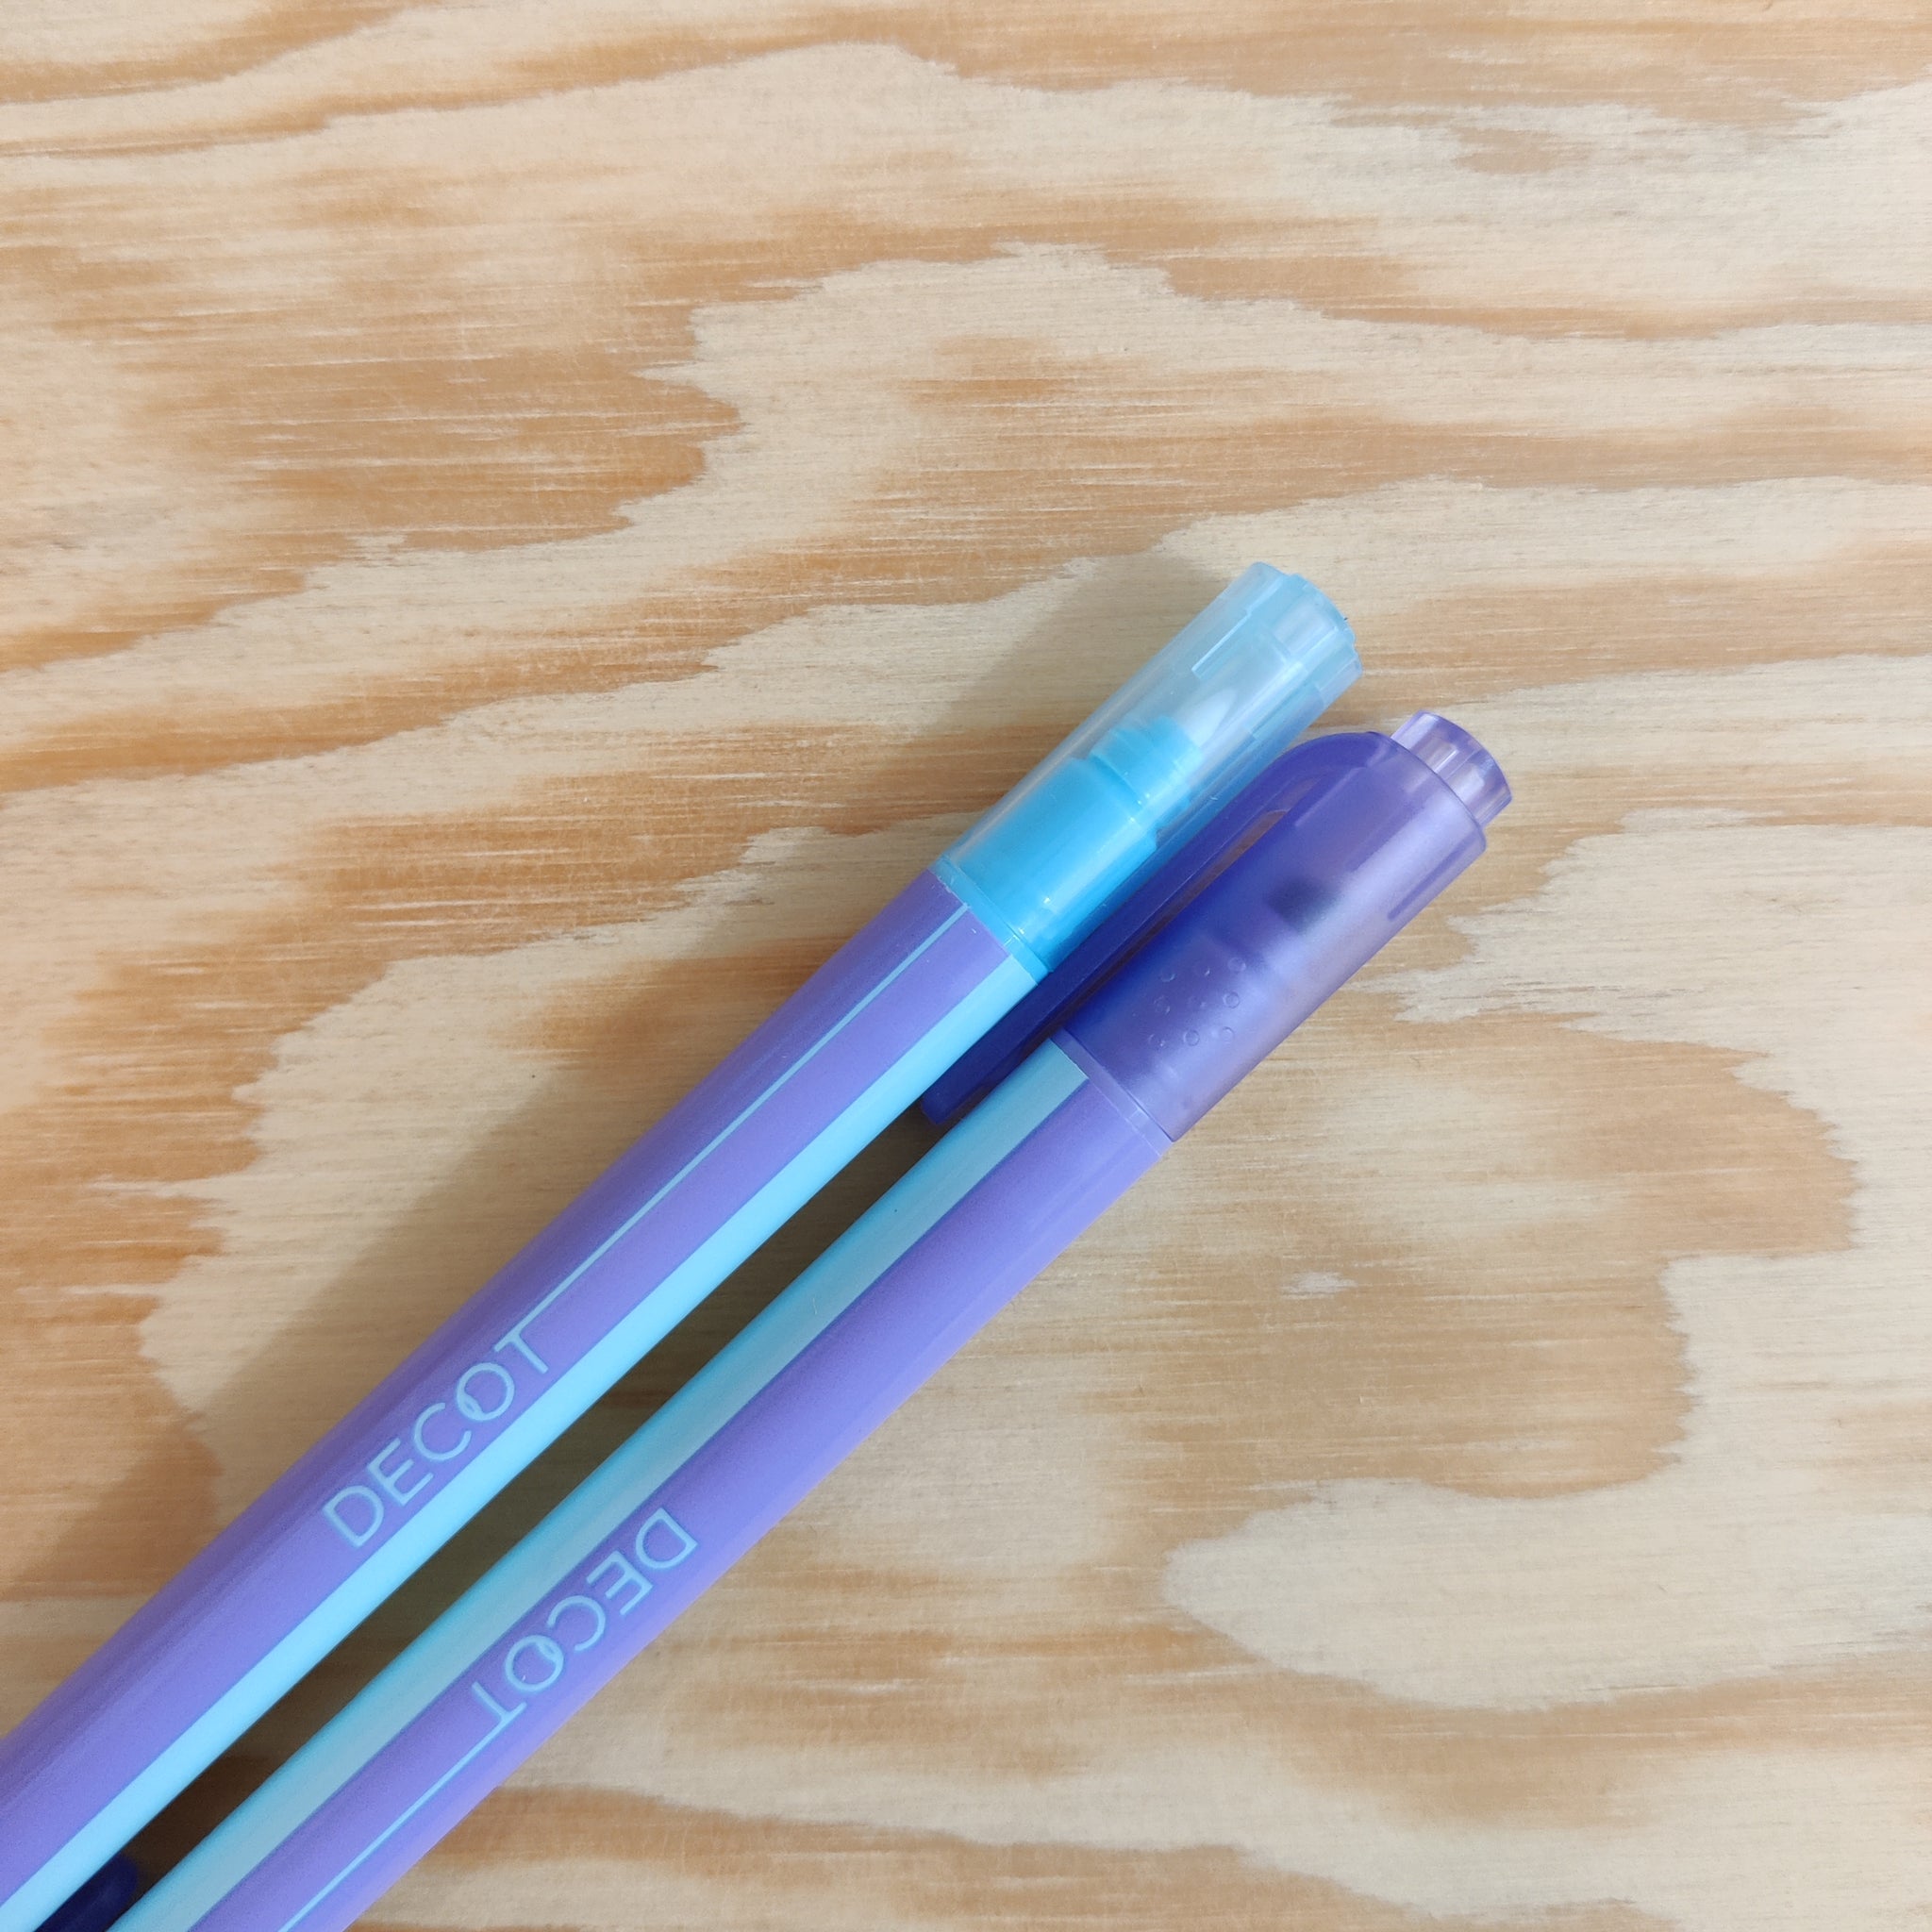 DECOT Color Changing Marker - Violet/Light Blue